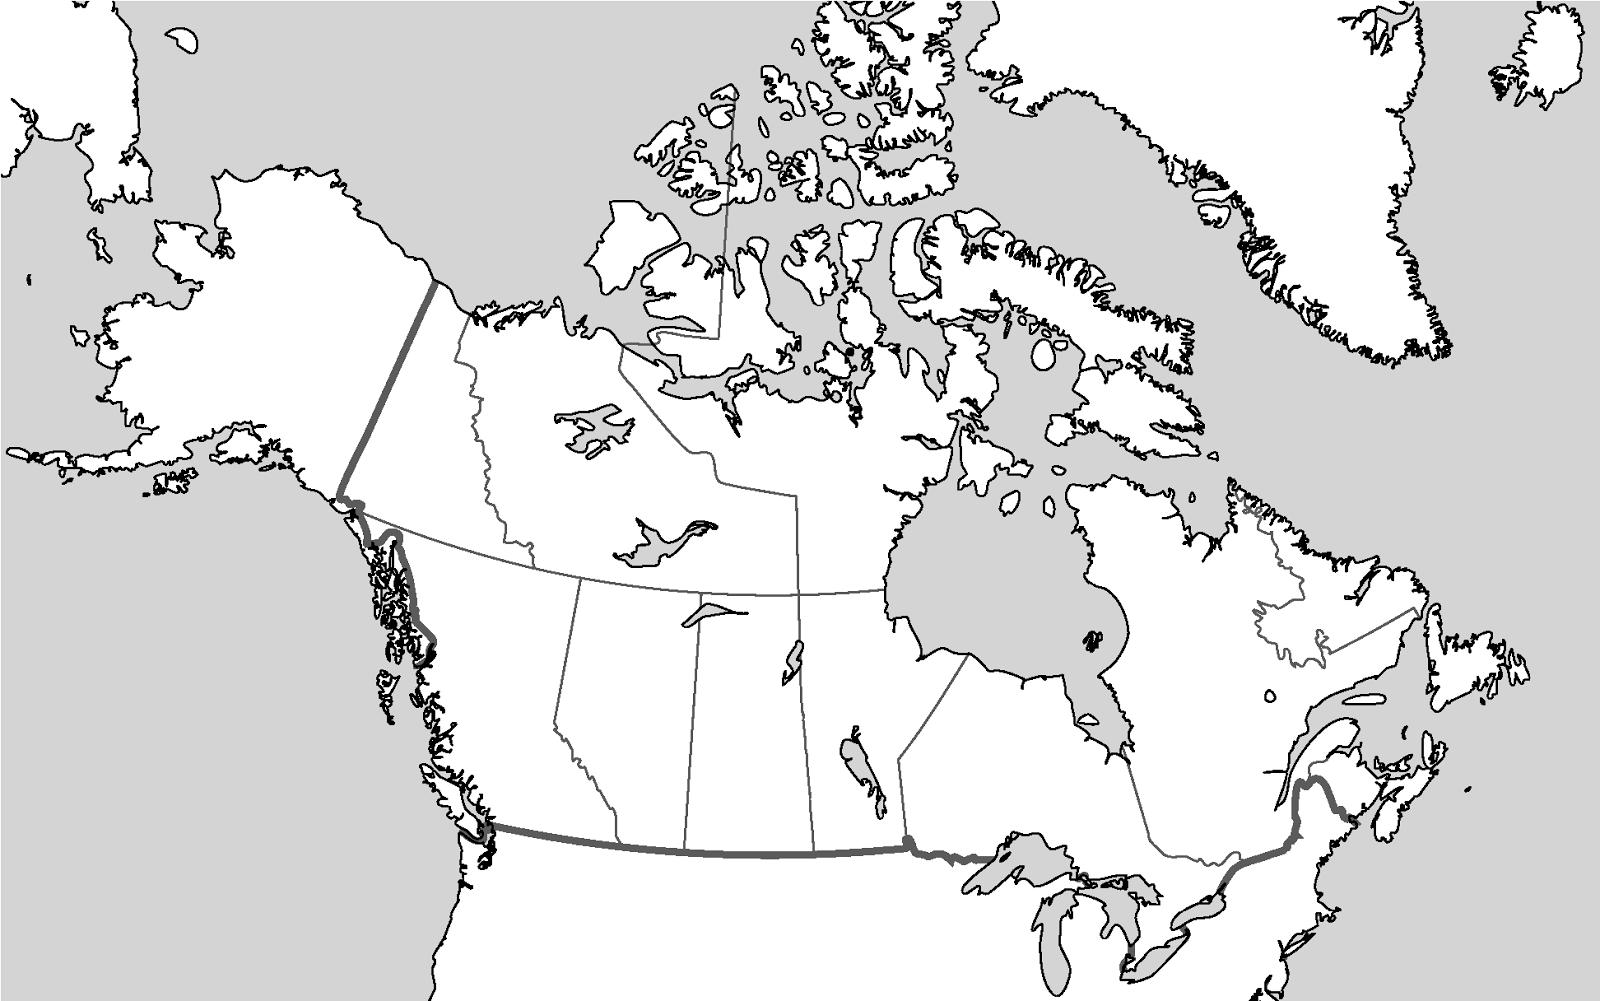 Canada carte vierge - Une carte muette du Canada (Amérique du Nord -  Amérique)